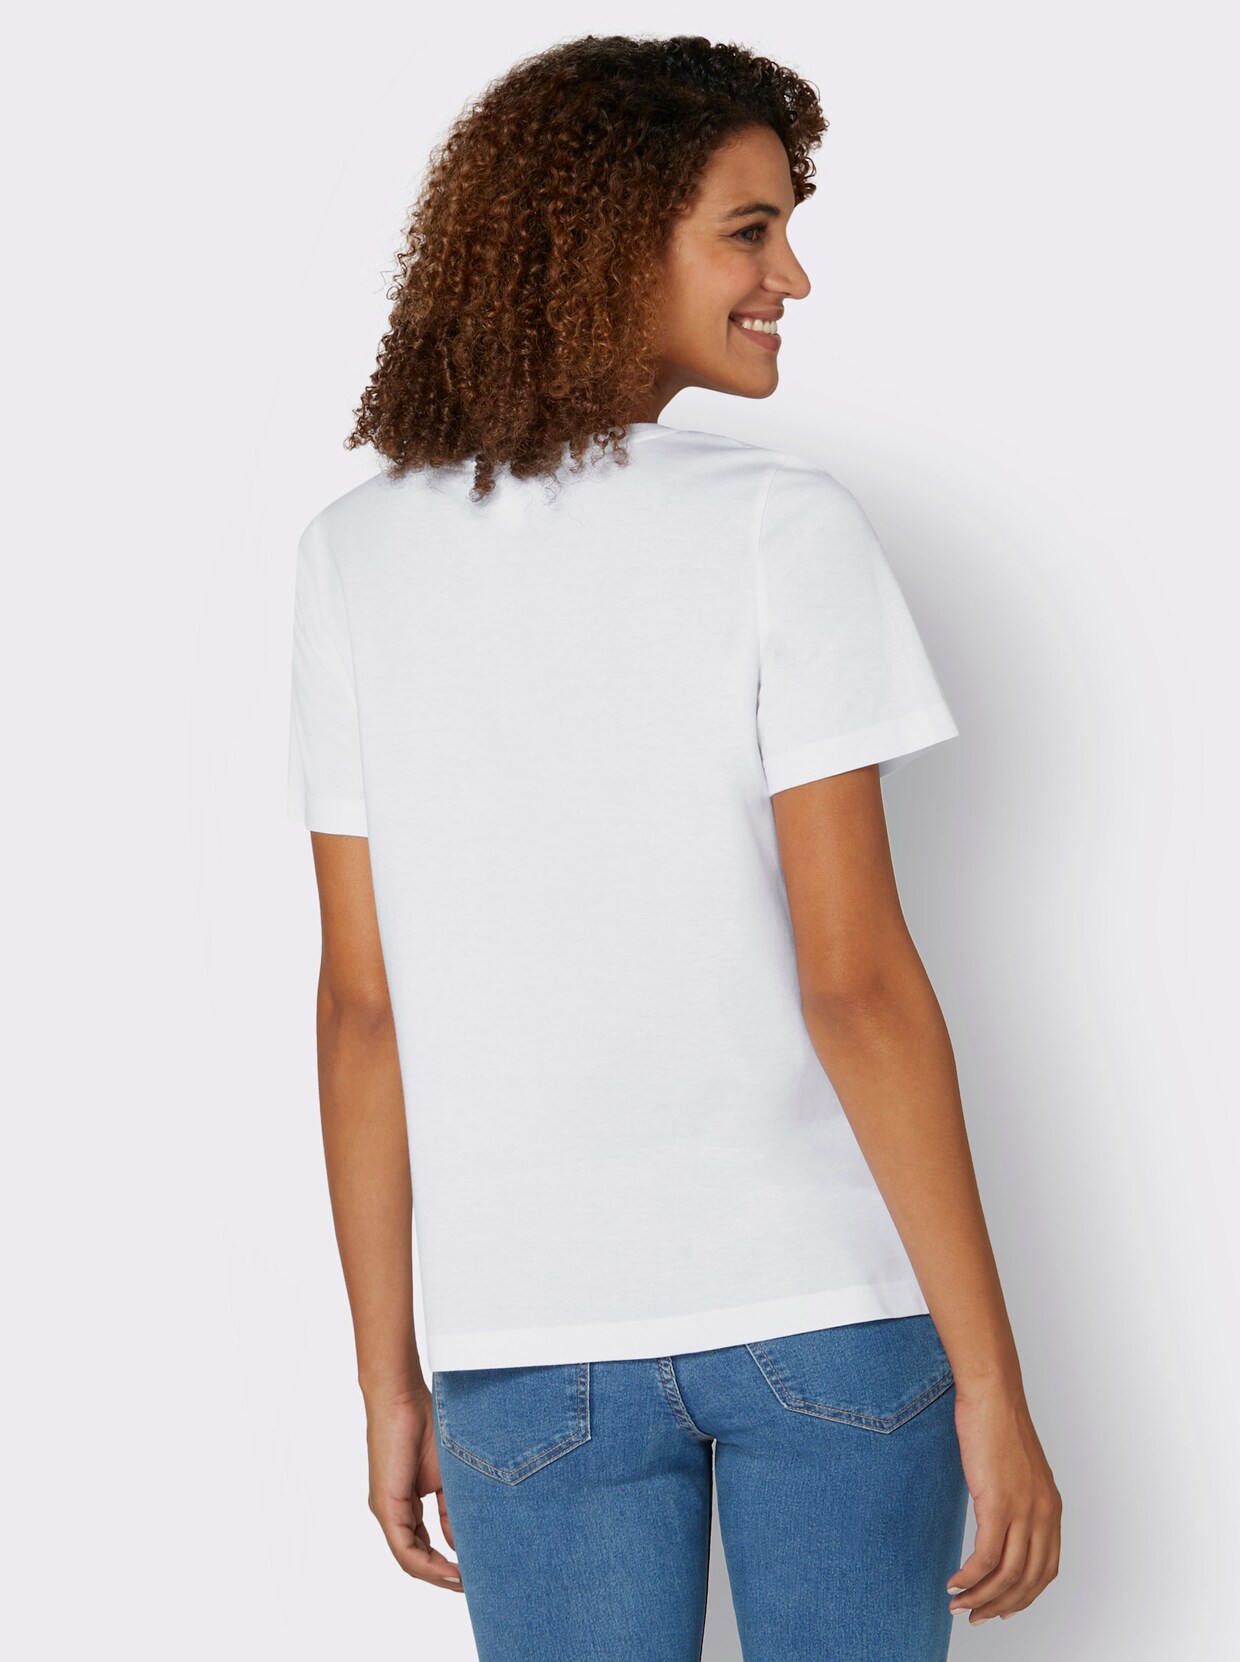 Print-Shirt - weiß-bedruckt